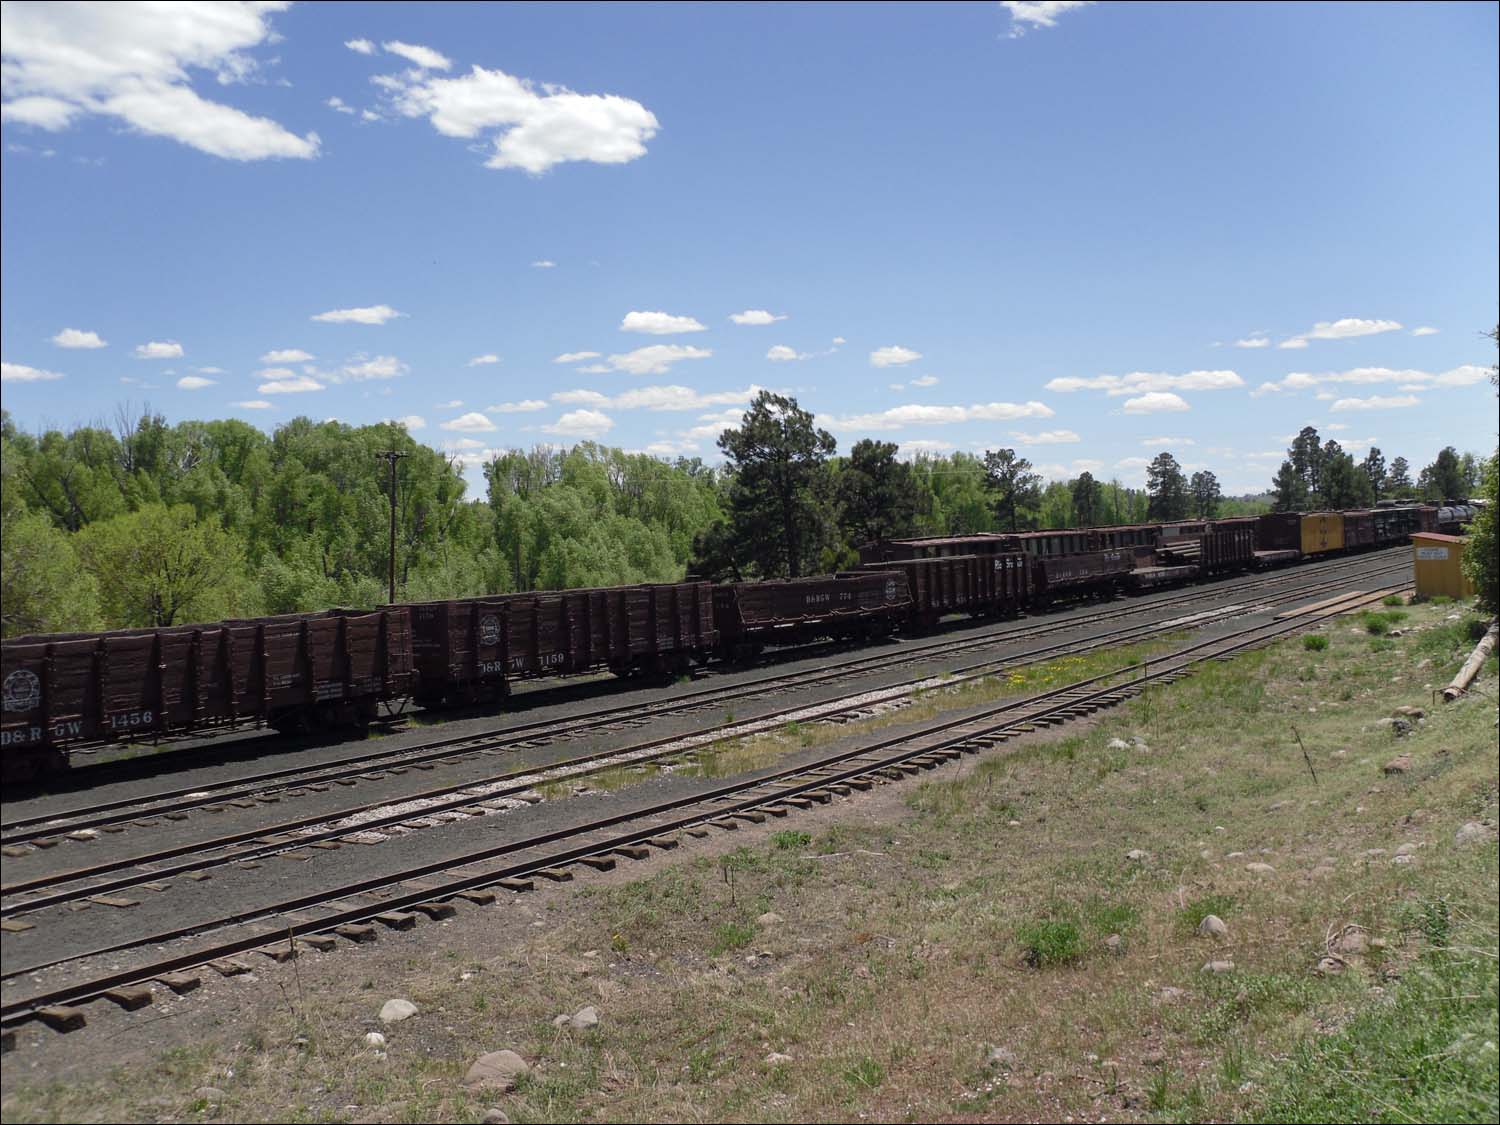 Chama, NM-Cumbres & Toltec Scenic Railroad-cars